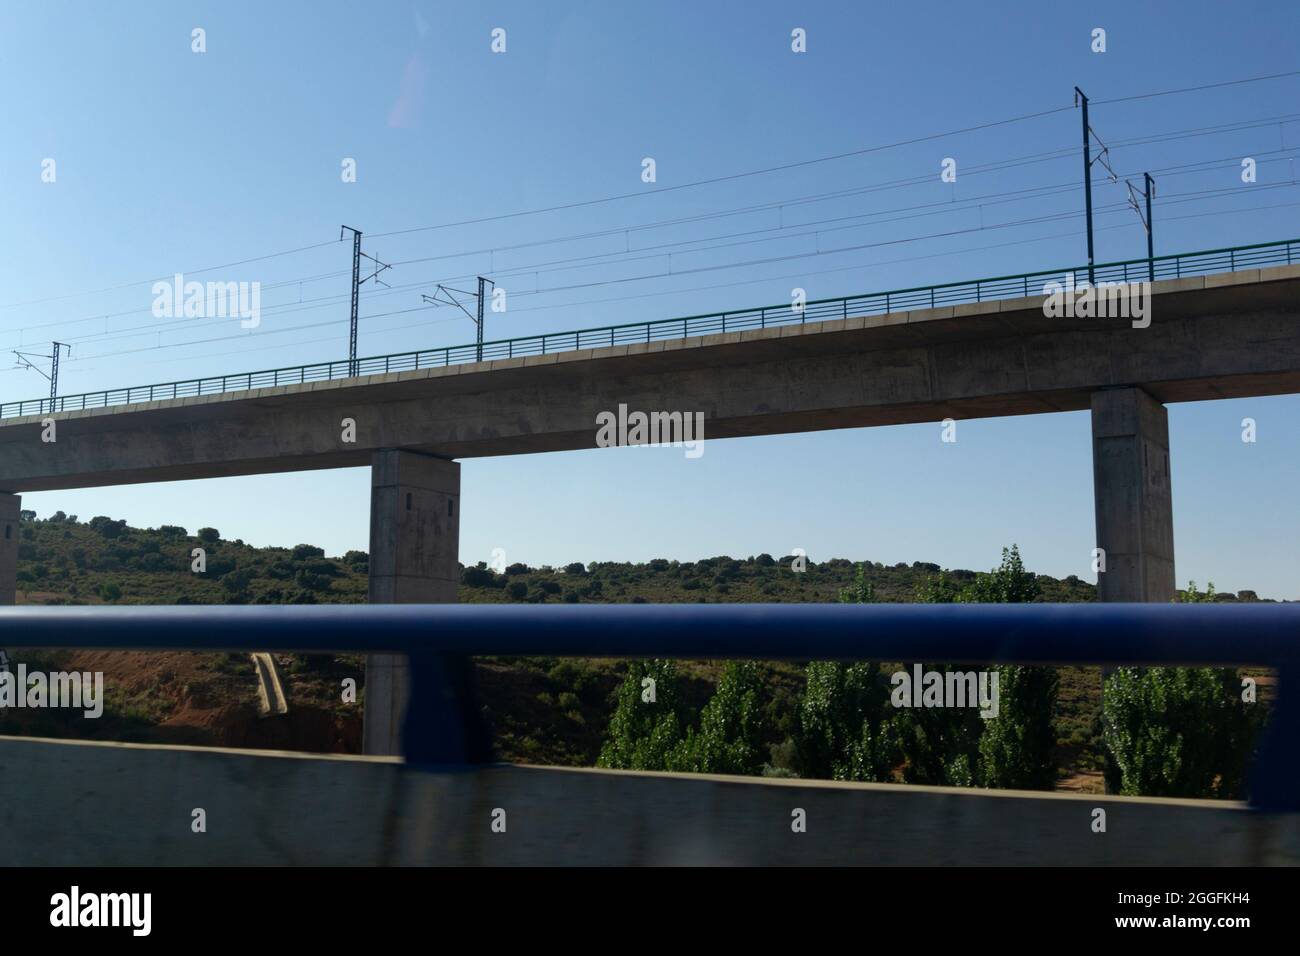 Linea ferroviaria ad alta velocità in Spagna. Strade d'Europa. Fotografia orizzontale. Foto Stock